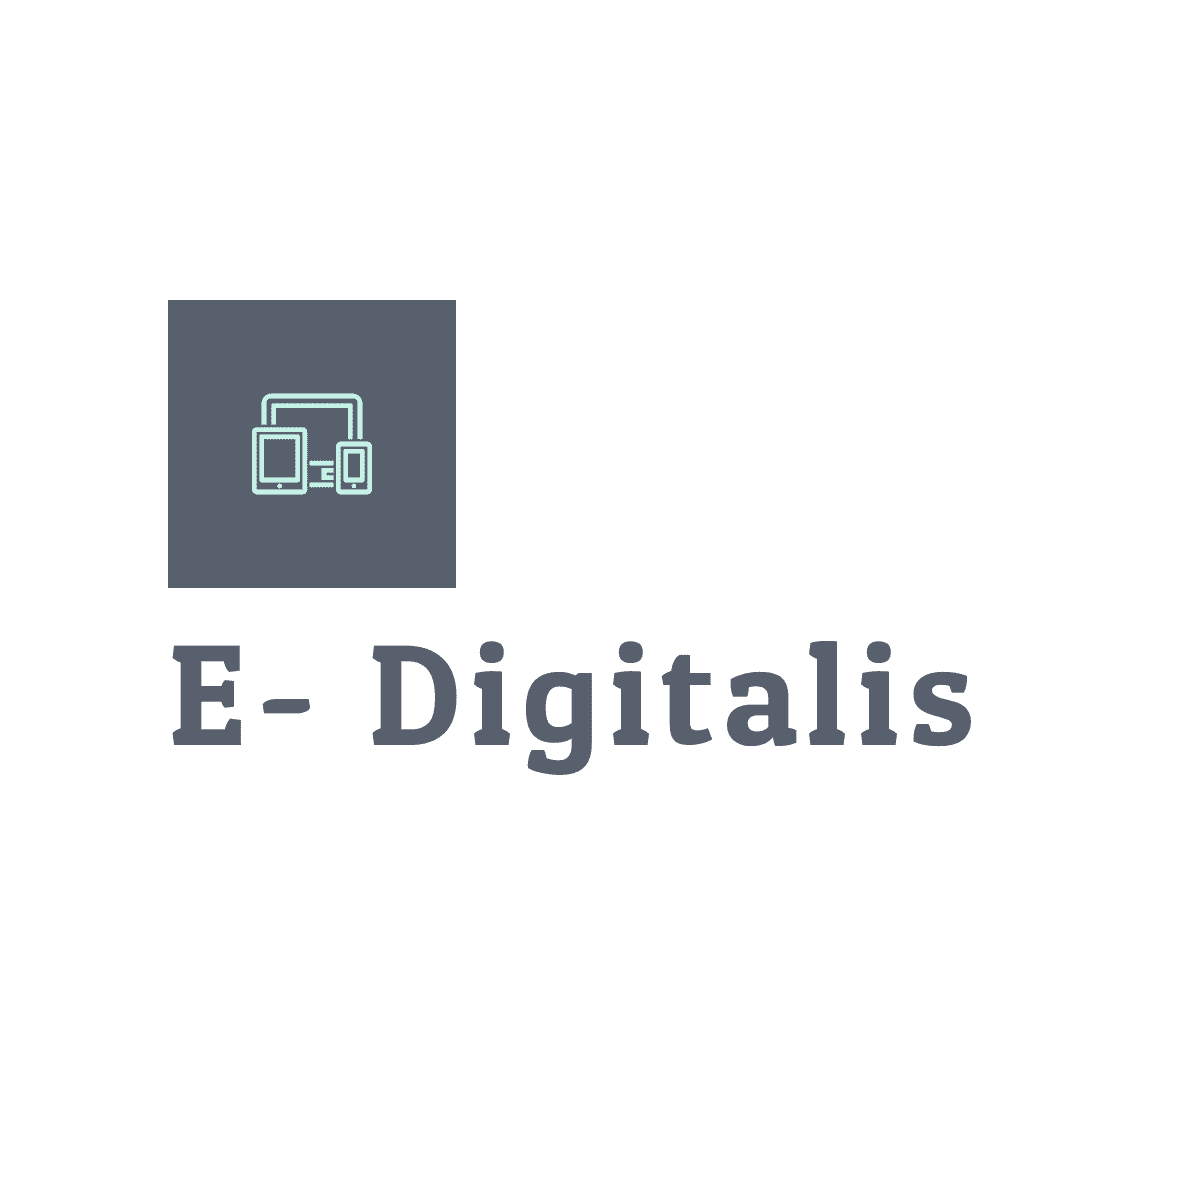 E- Digitalis